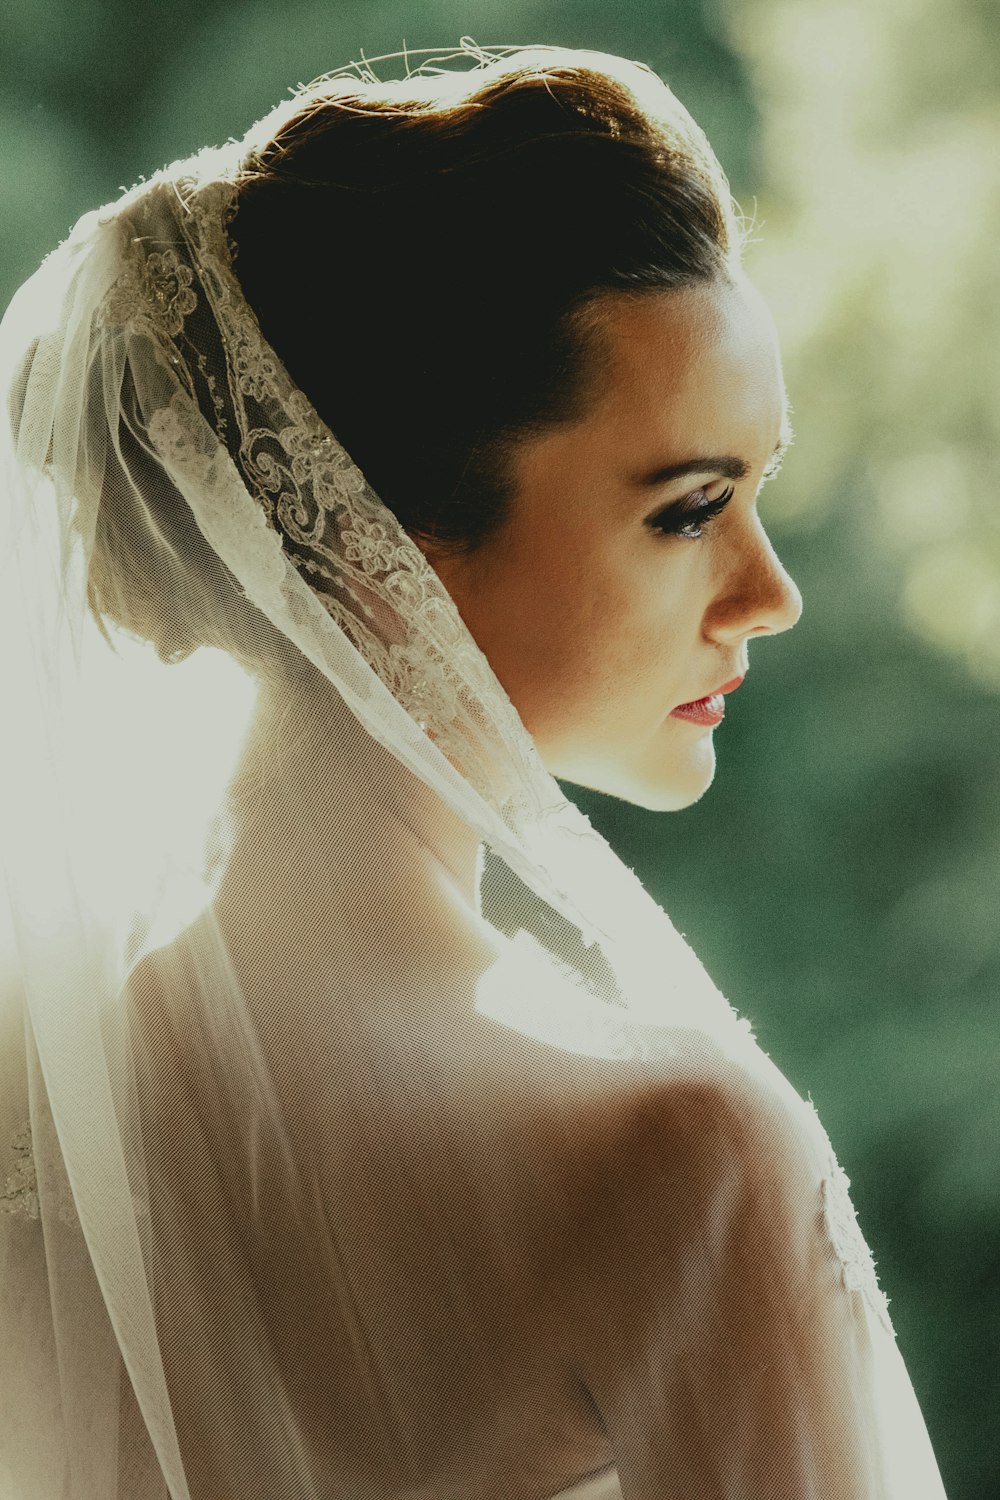 woman wearing white wedding veil